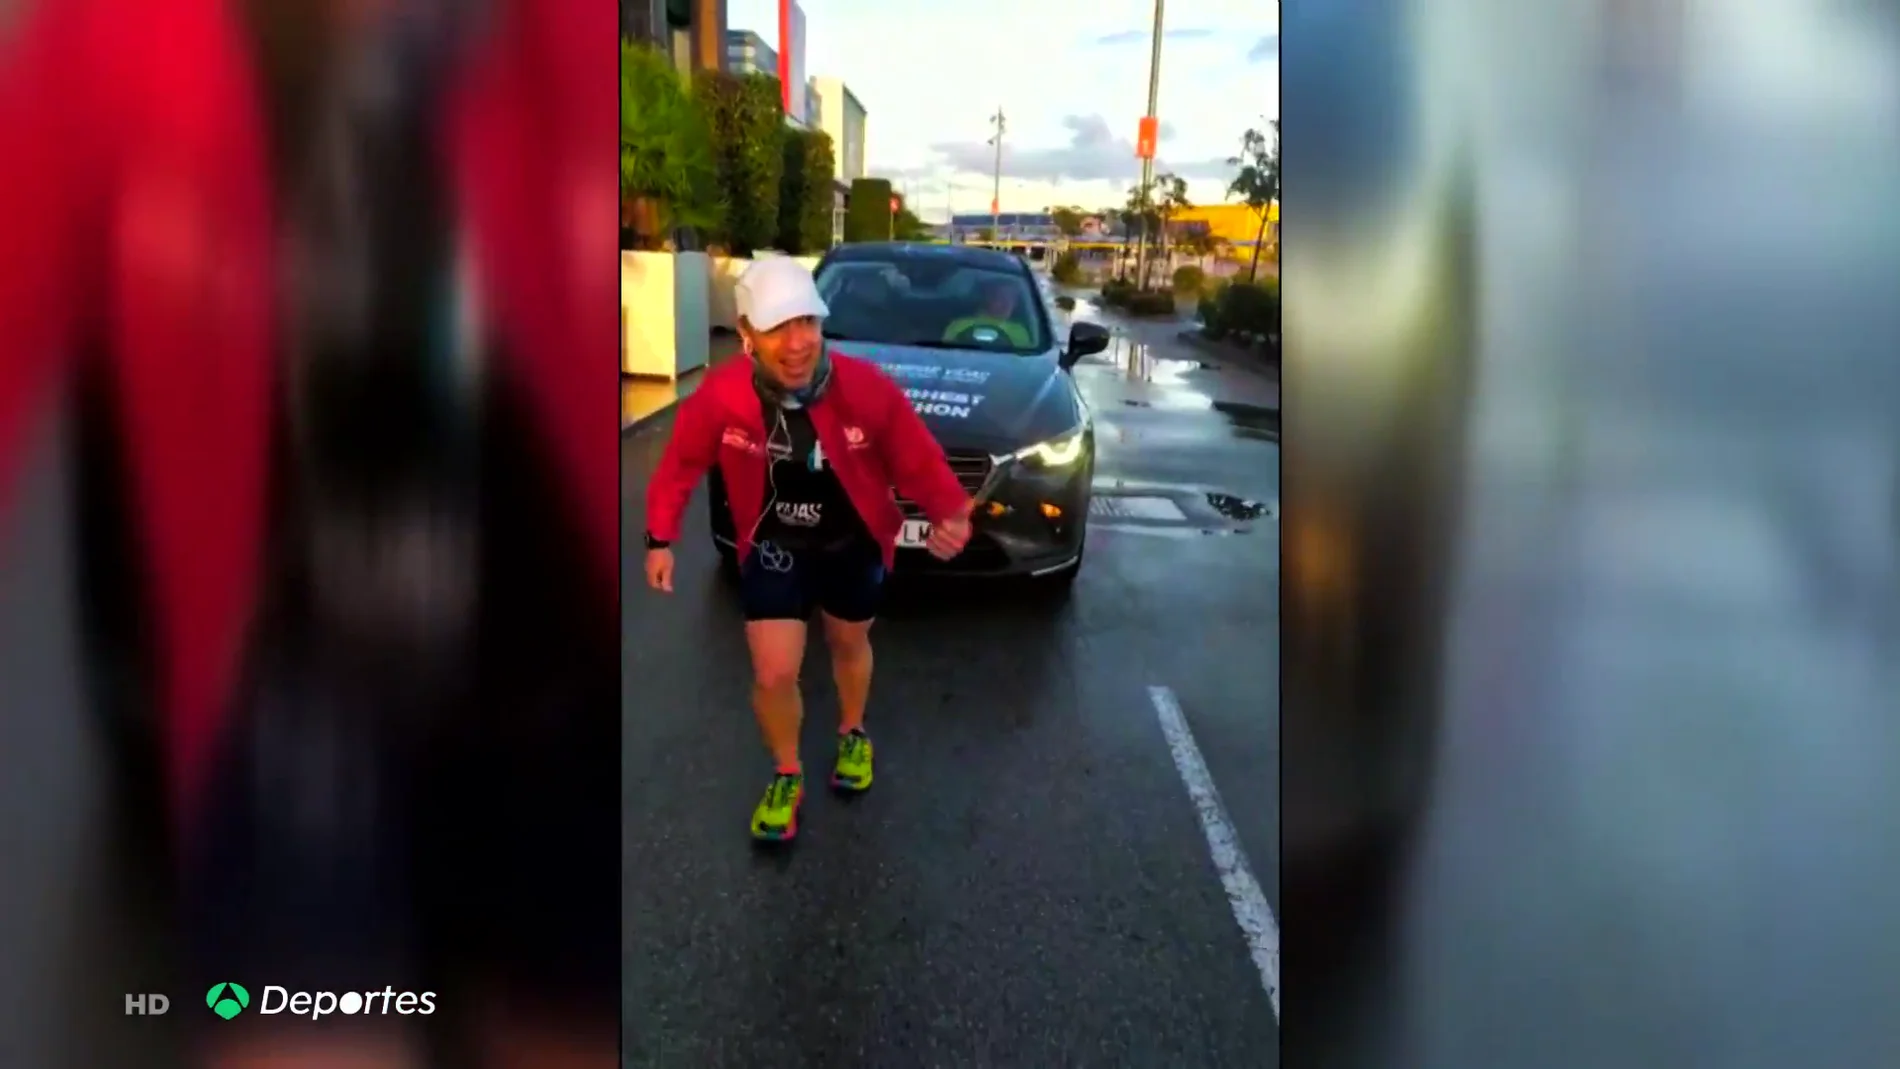 El increíble reto de Humberto Otero: completar un maratón tirando de un coche durante casi 12 horas